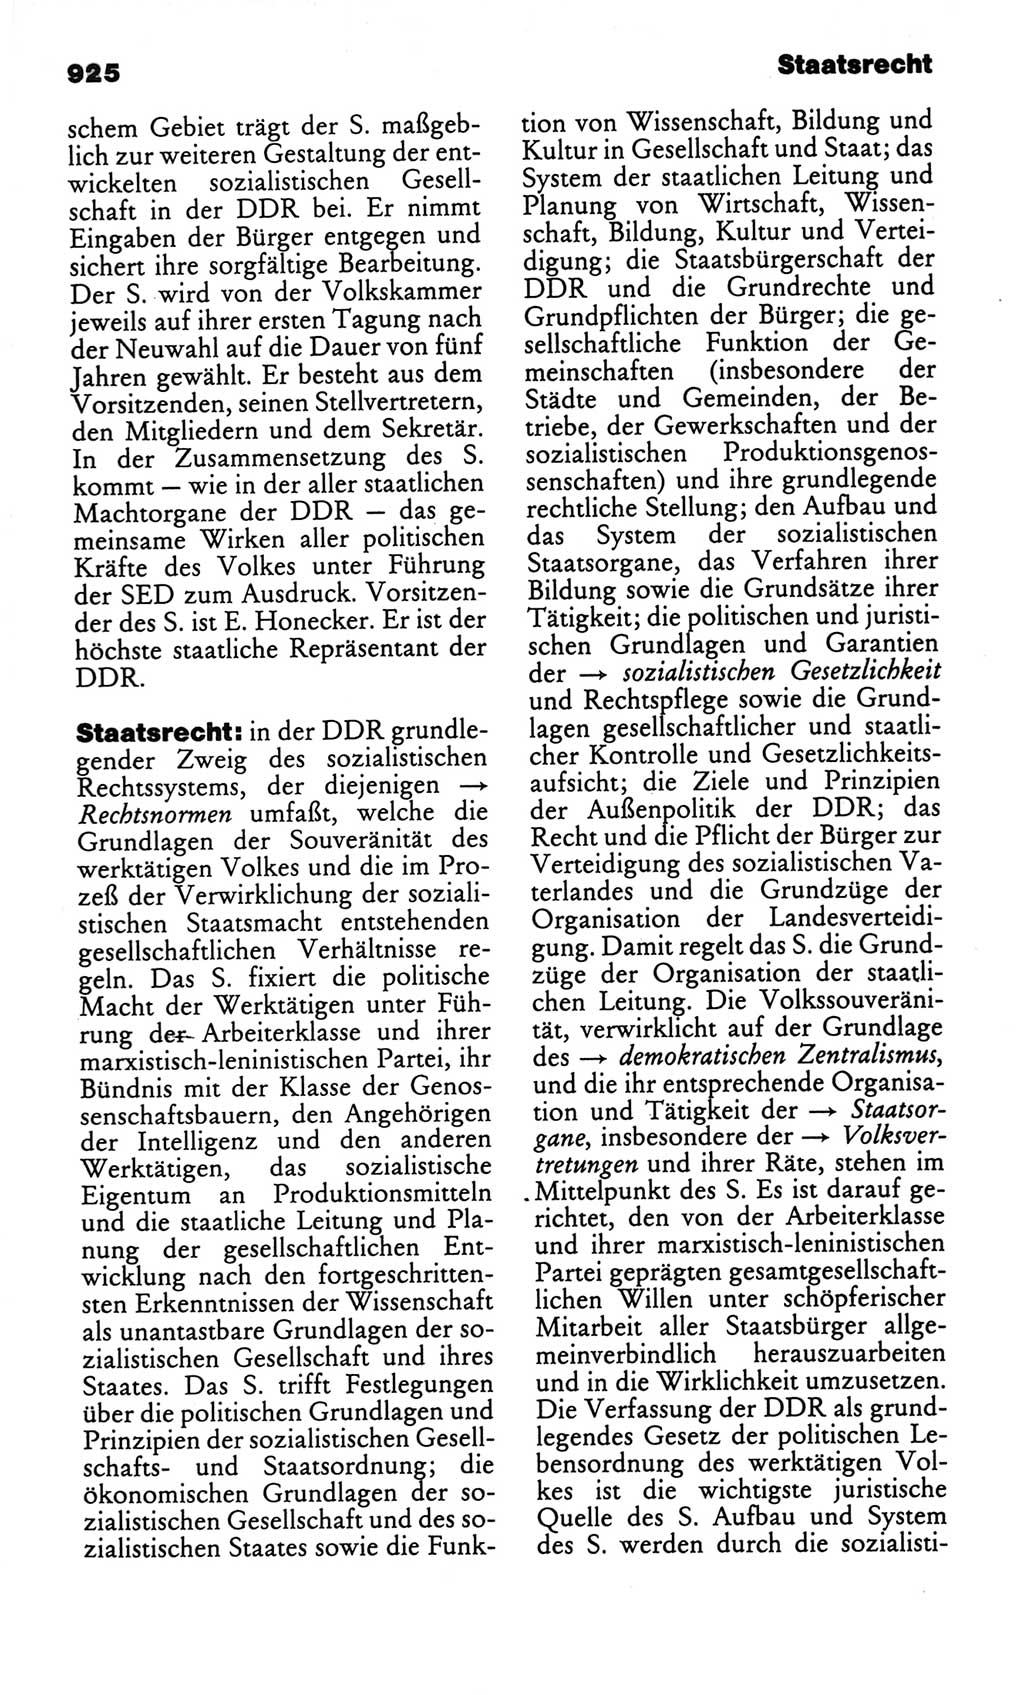 Kleines politisches Wörterbuch [Deutsche Demokratische Republik (DDR)] 1986, Seite 925 (Kl. pol. Wb. DDR 1986, S. 925)